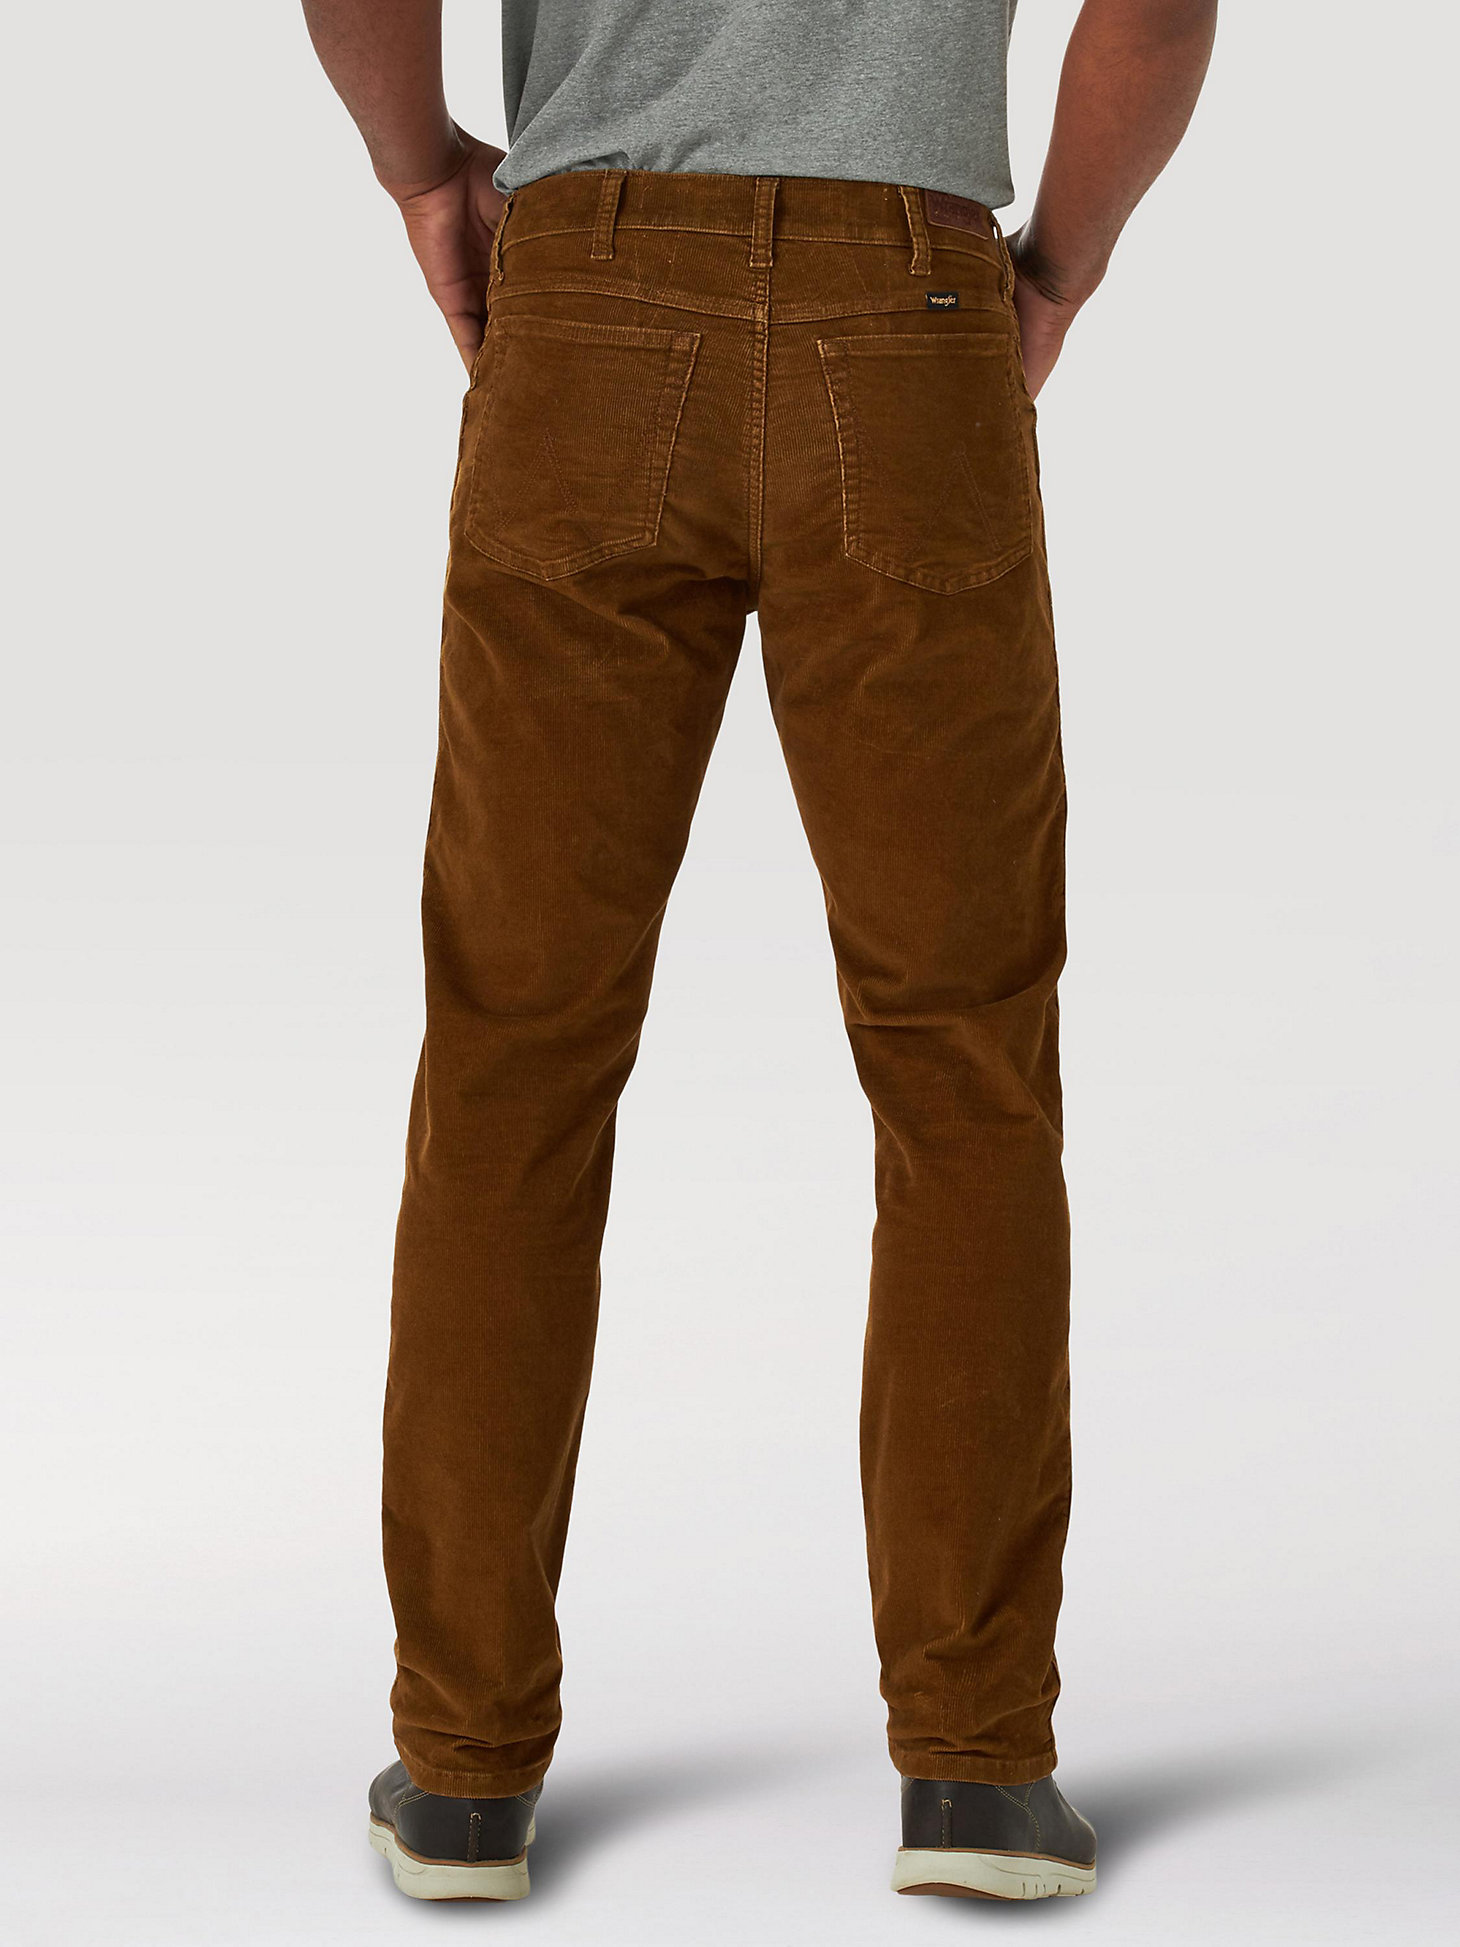 Men's Wrangler® Regular Tapered Corduroy Jeans in Monks Robe alternative view 1